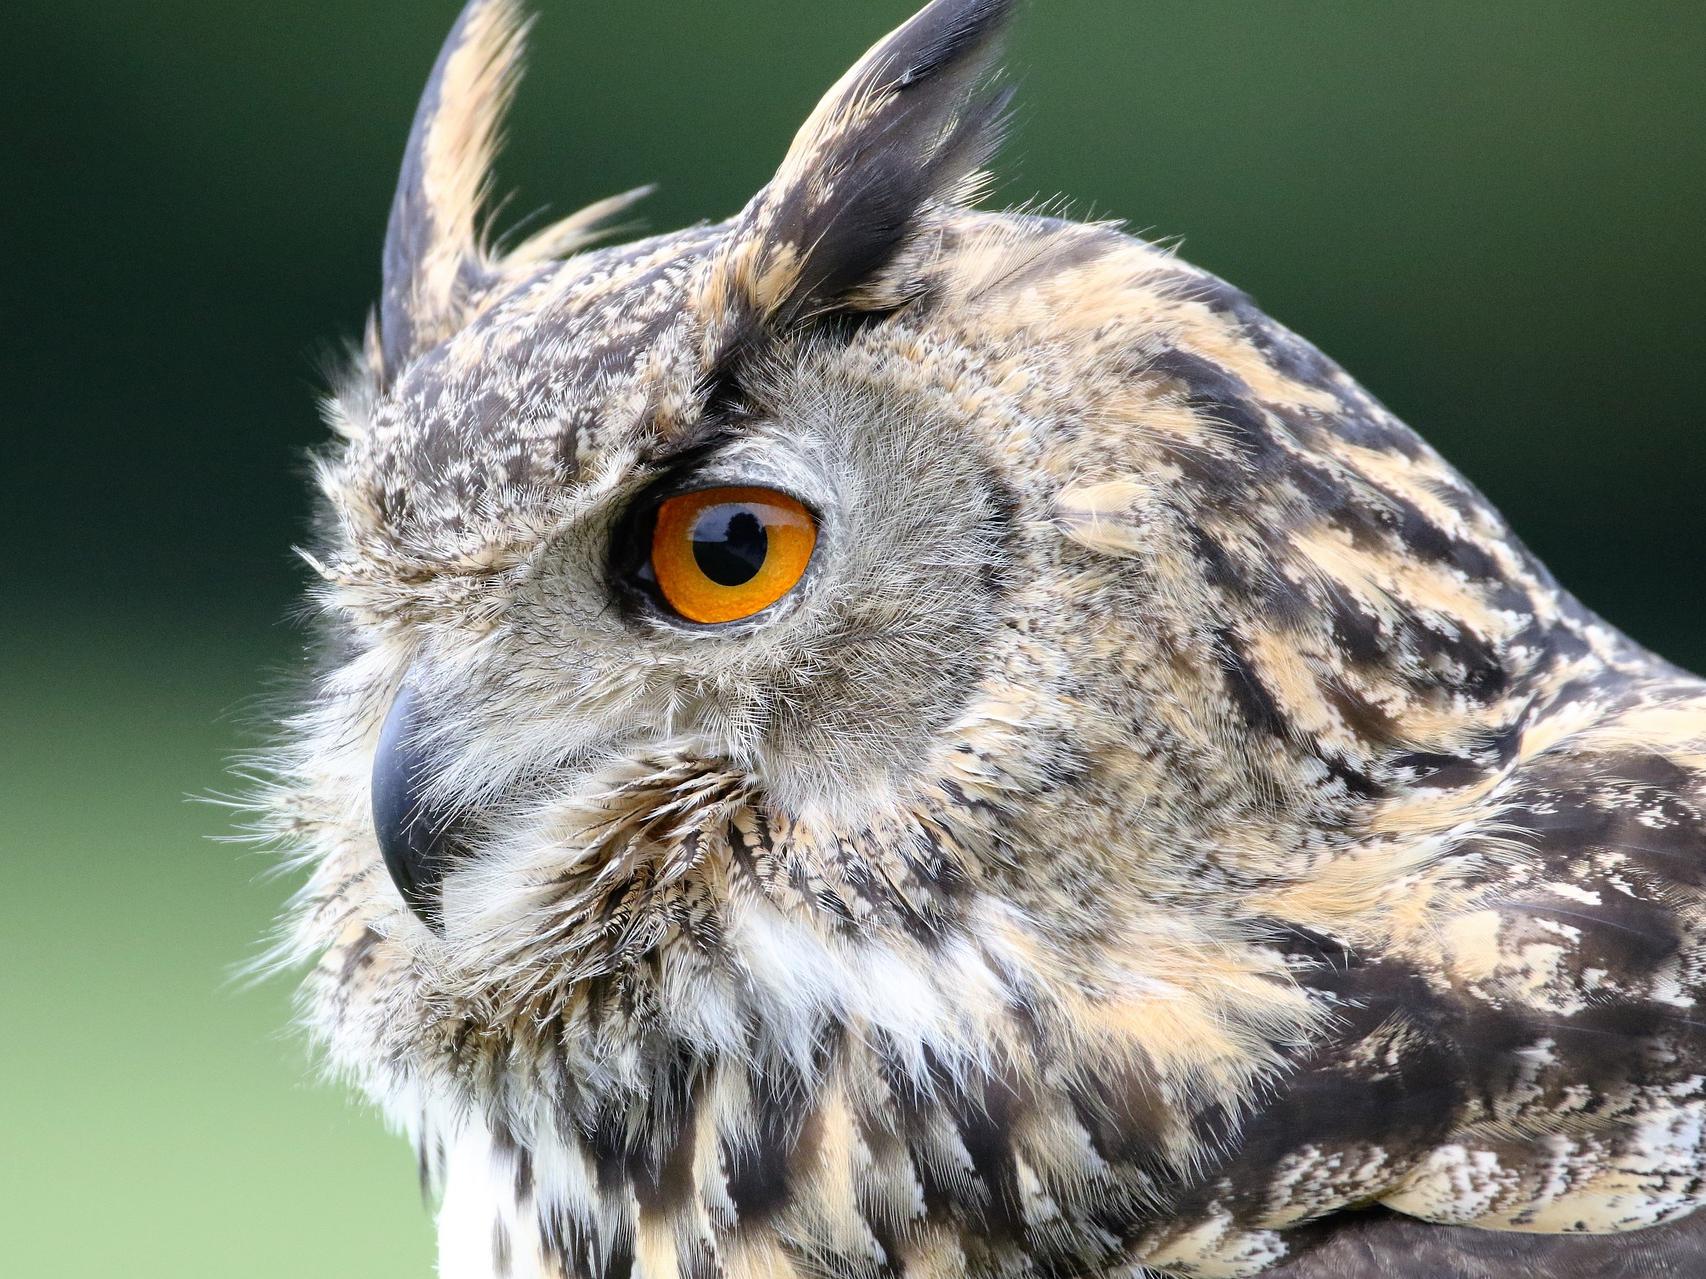 An Owl